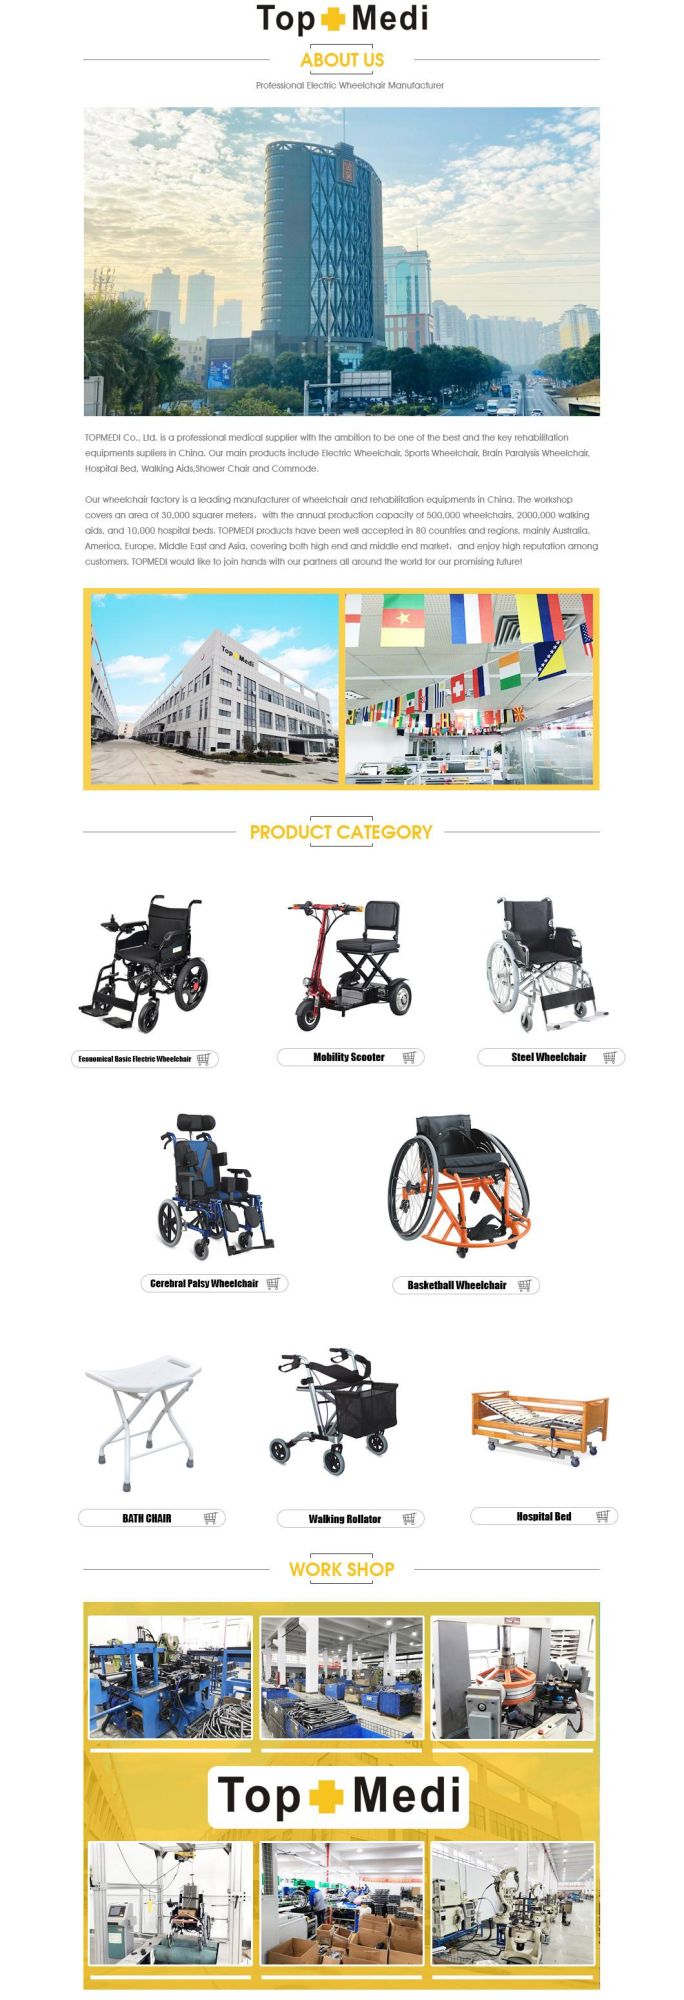 Topmedi Medical Equipment Standard Lightweight Aluminum Wheelchair